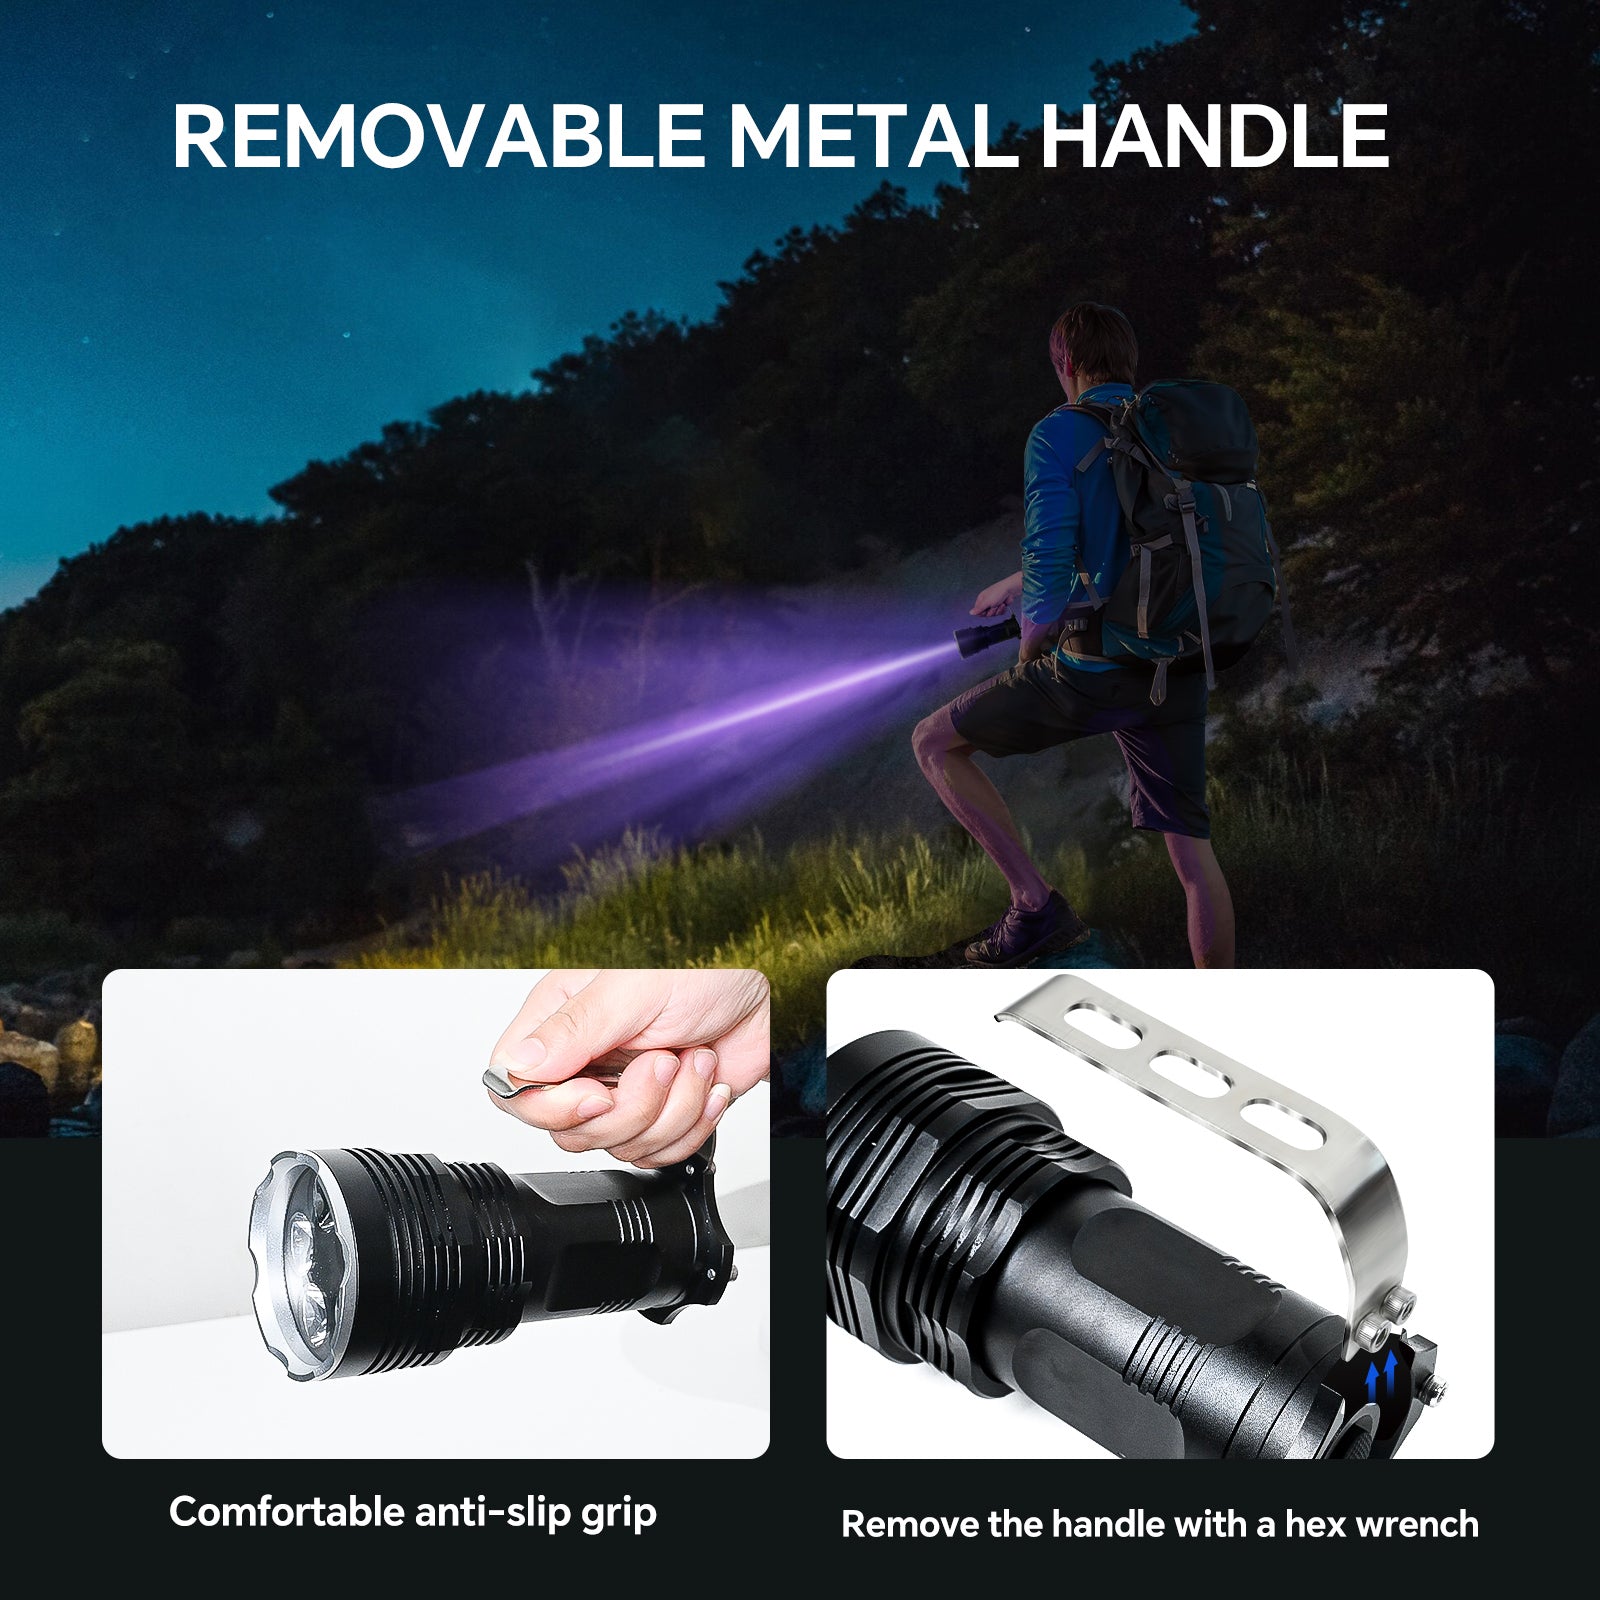 UltraFire UV Flashlight 5 LED 395nm Blacklight Flashlight